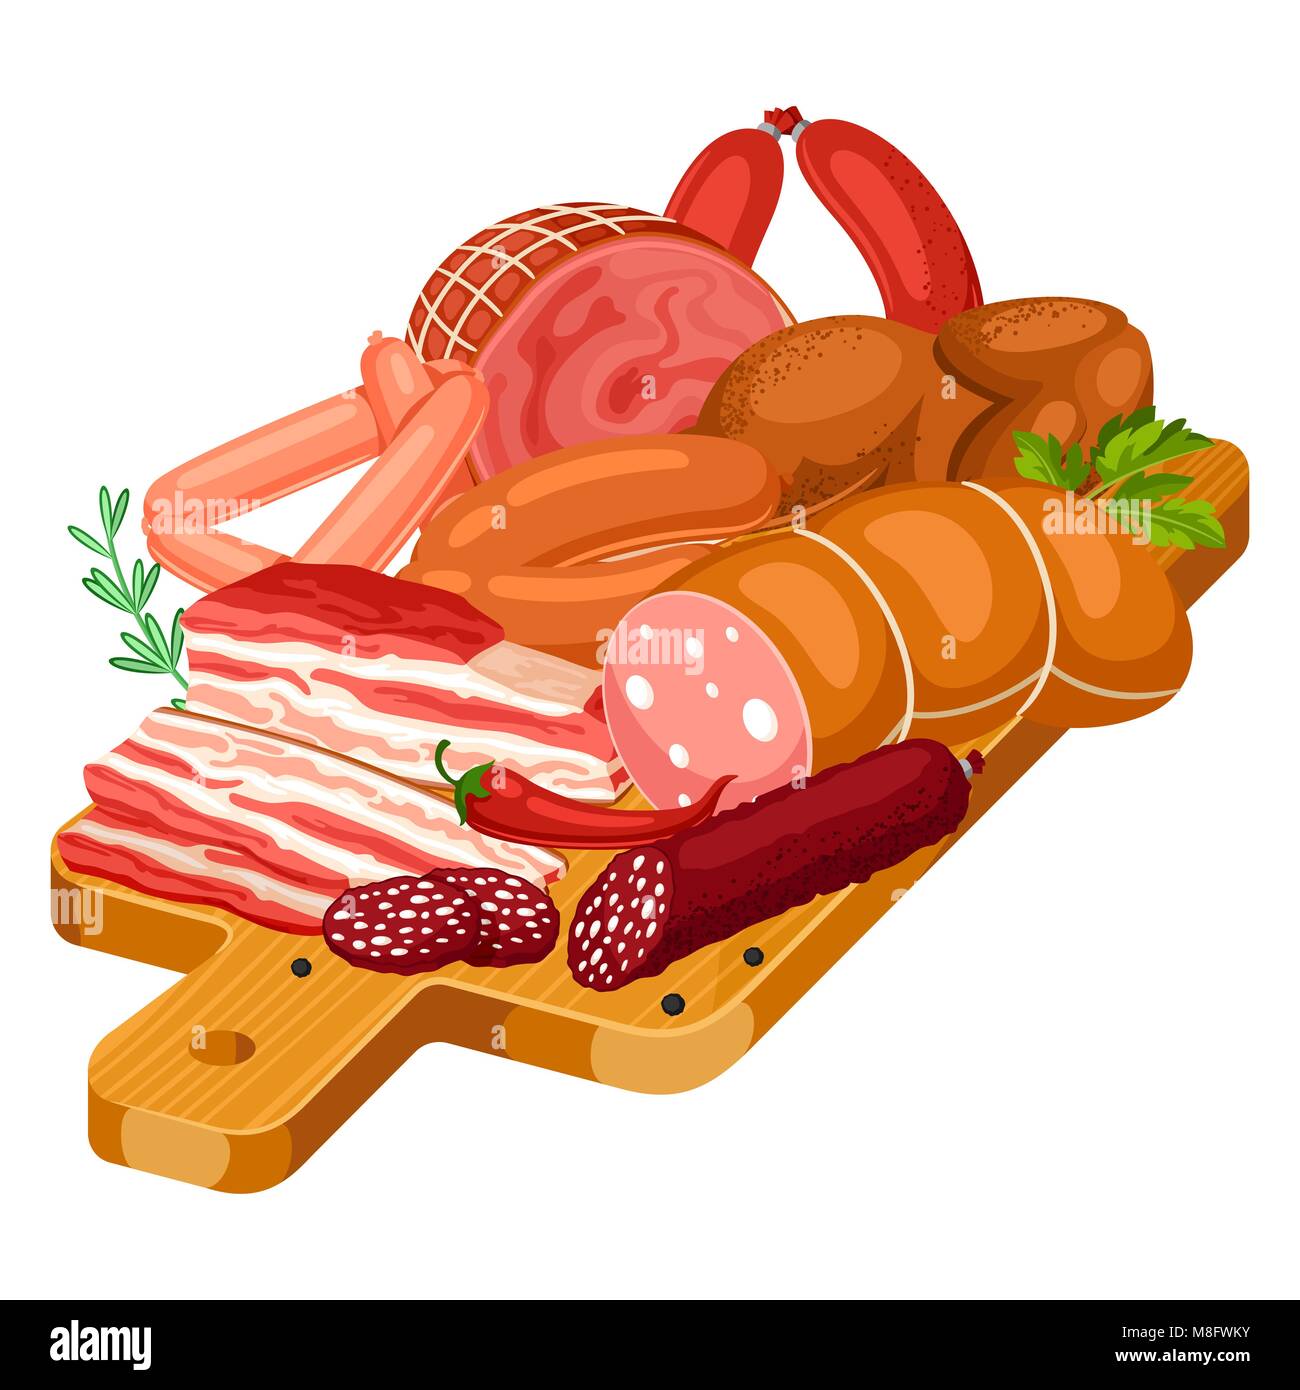 Illustration avec des produits de viande sur une planche à découper en bois. Illustration de saucisses, bacon et jambon Illustration de Vecteur